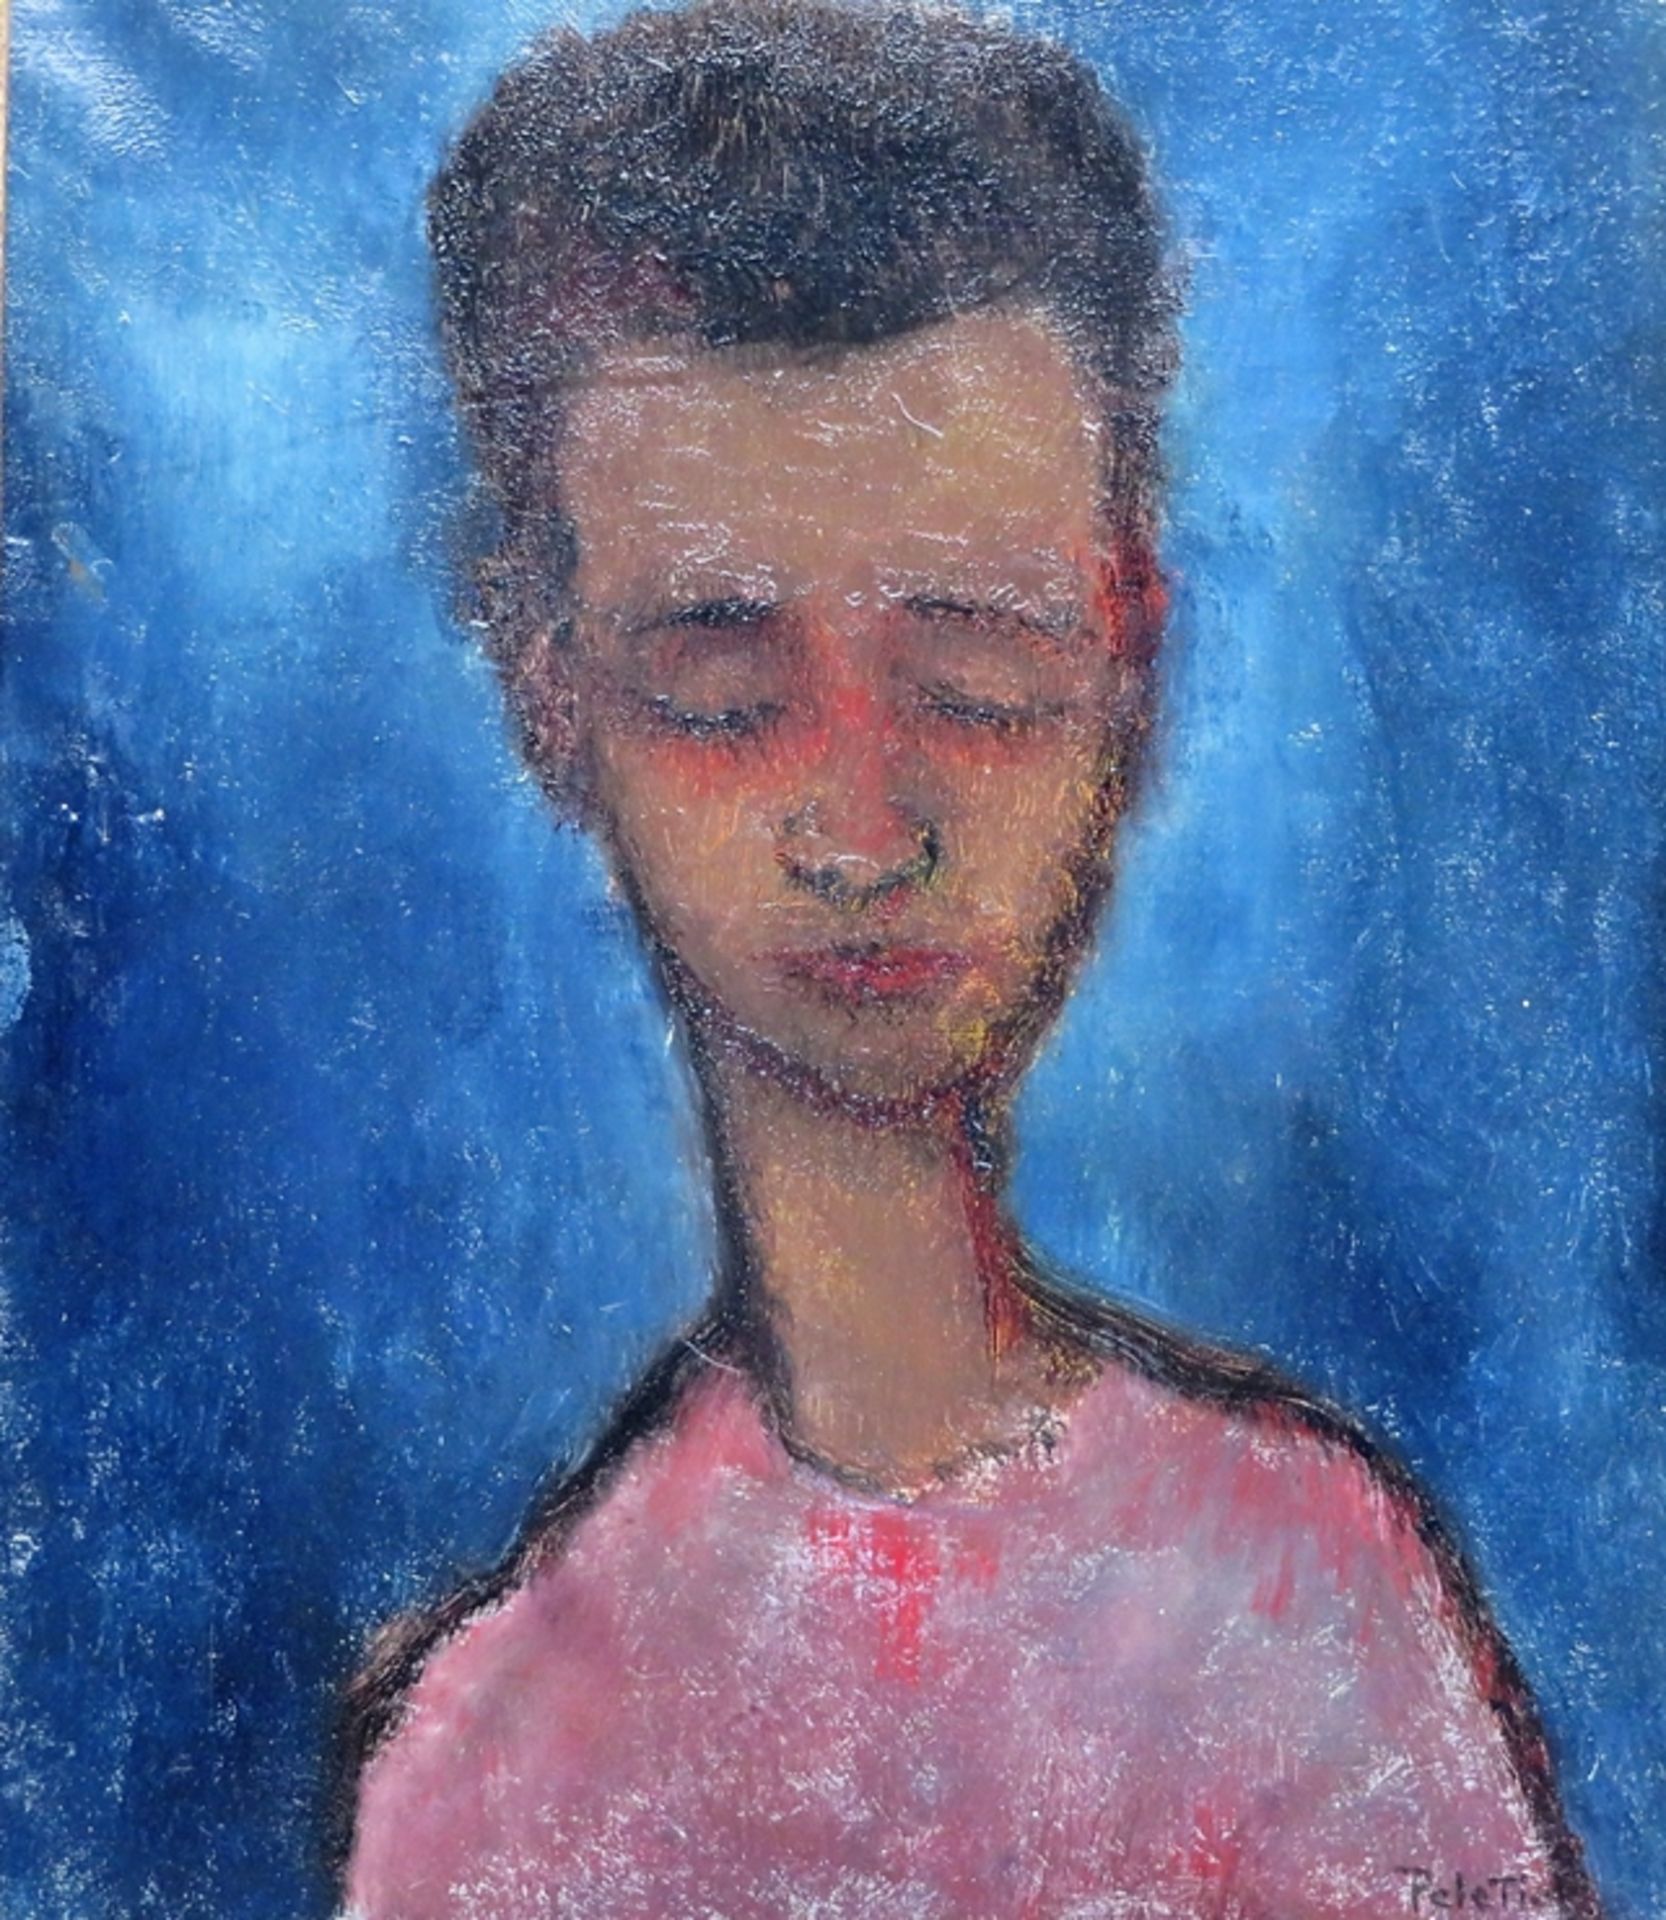 Peletic/Pele Tic, "Porträt eines Jungen", re.u.sign., Öl/Leinwand, 36 x 31 cm, R. [45,5 x 40,5 cm]